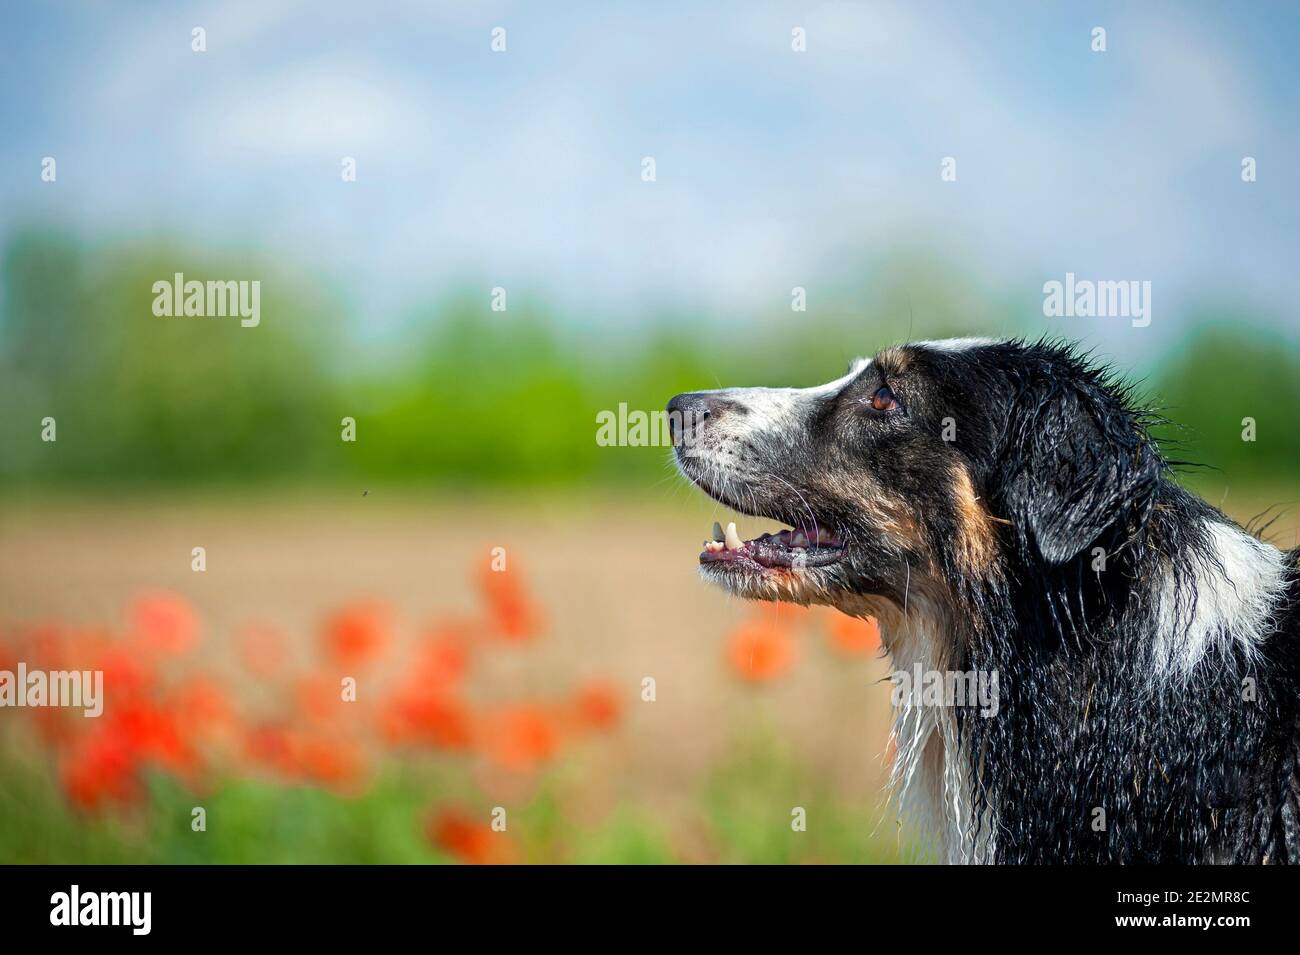 Nero tricolore bagnato australiano Shepherd cane ritratto, profilo shot. Pop rossi sullo sfondo, spazio di copia, sfondo sfocato Foto Stock